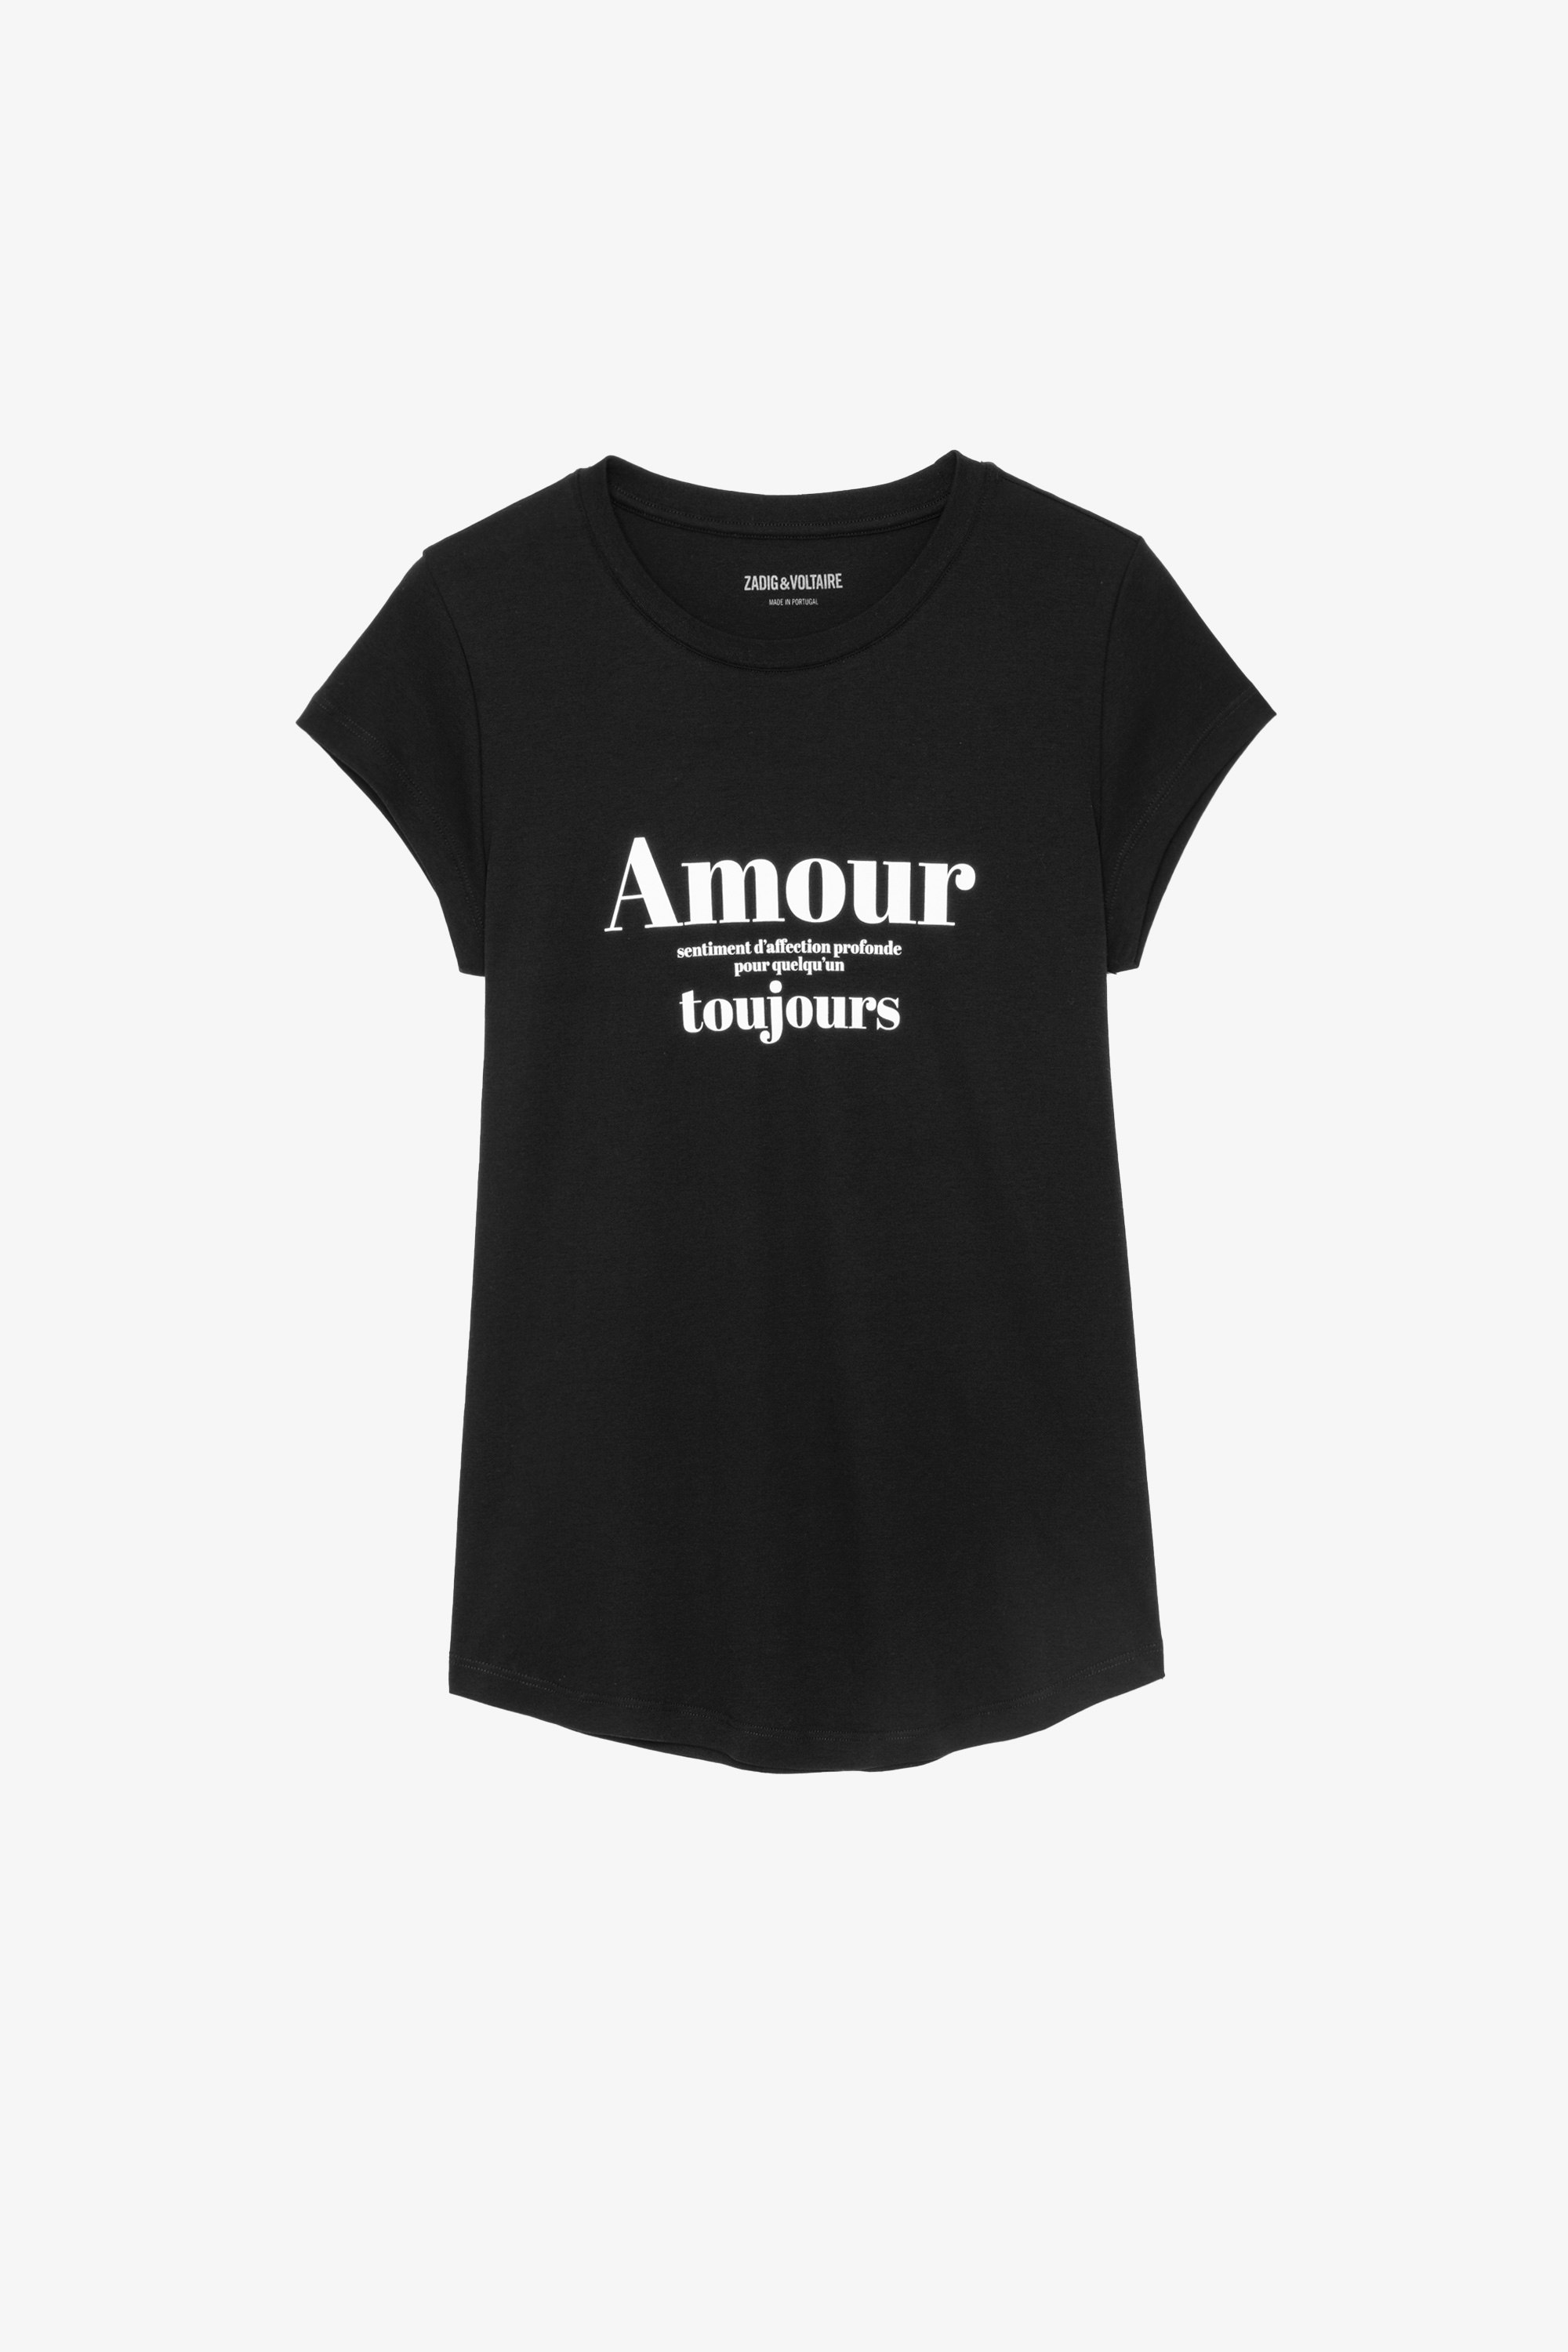 T-shirt Skinny Amour Toujours T-shirt en coton noir imprimé "Amour Toujours" contrasté Femme